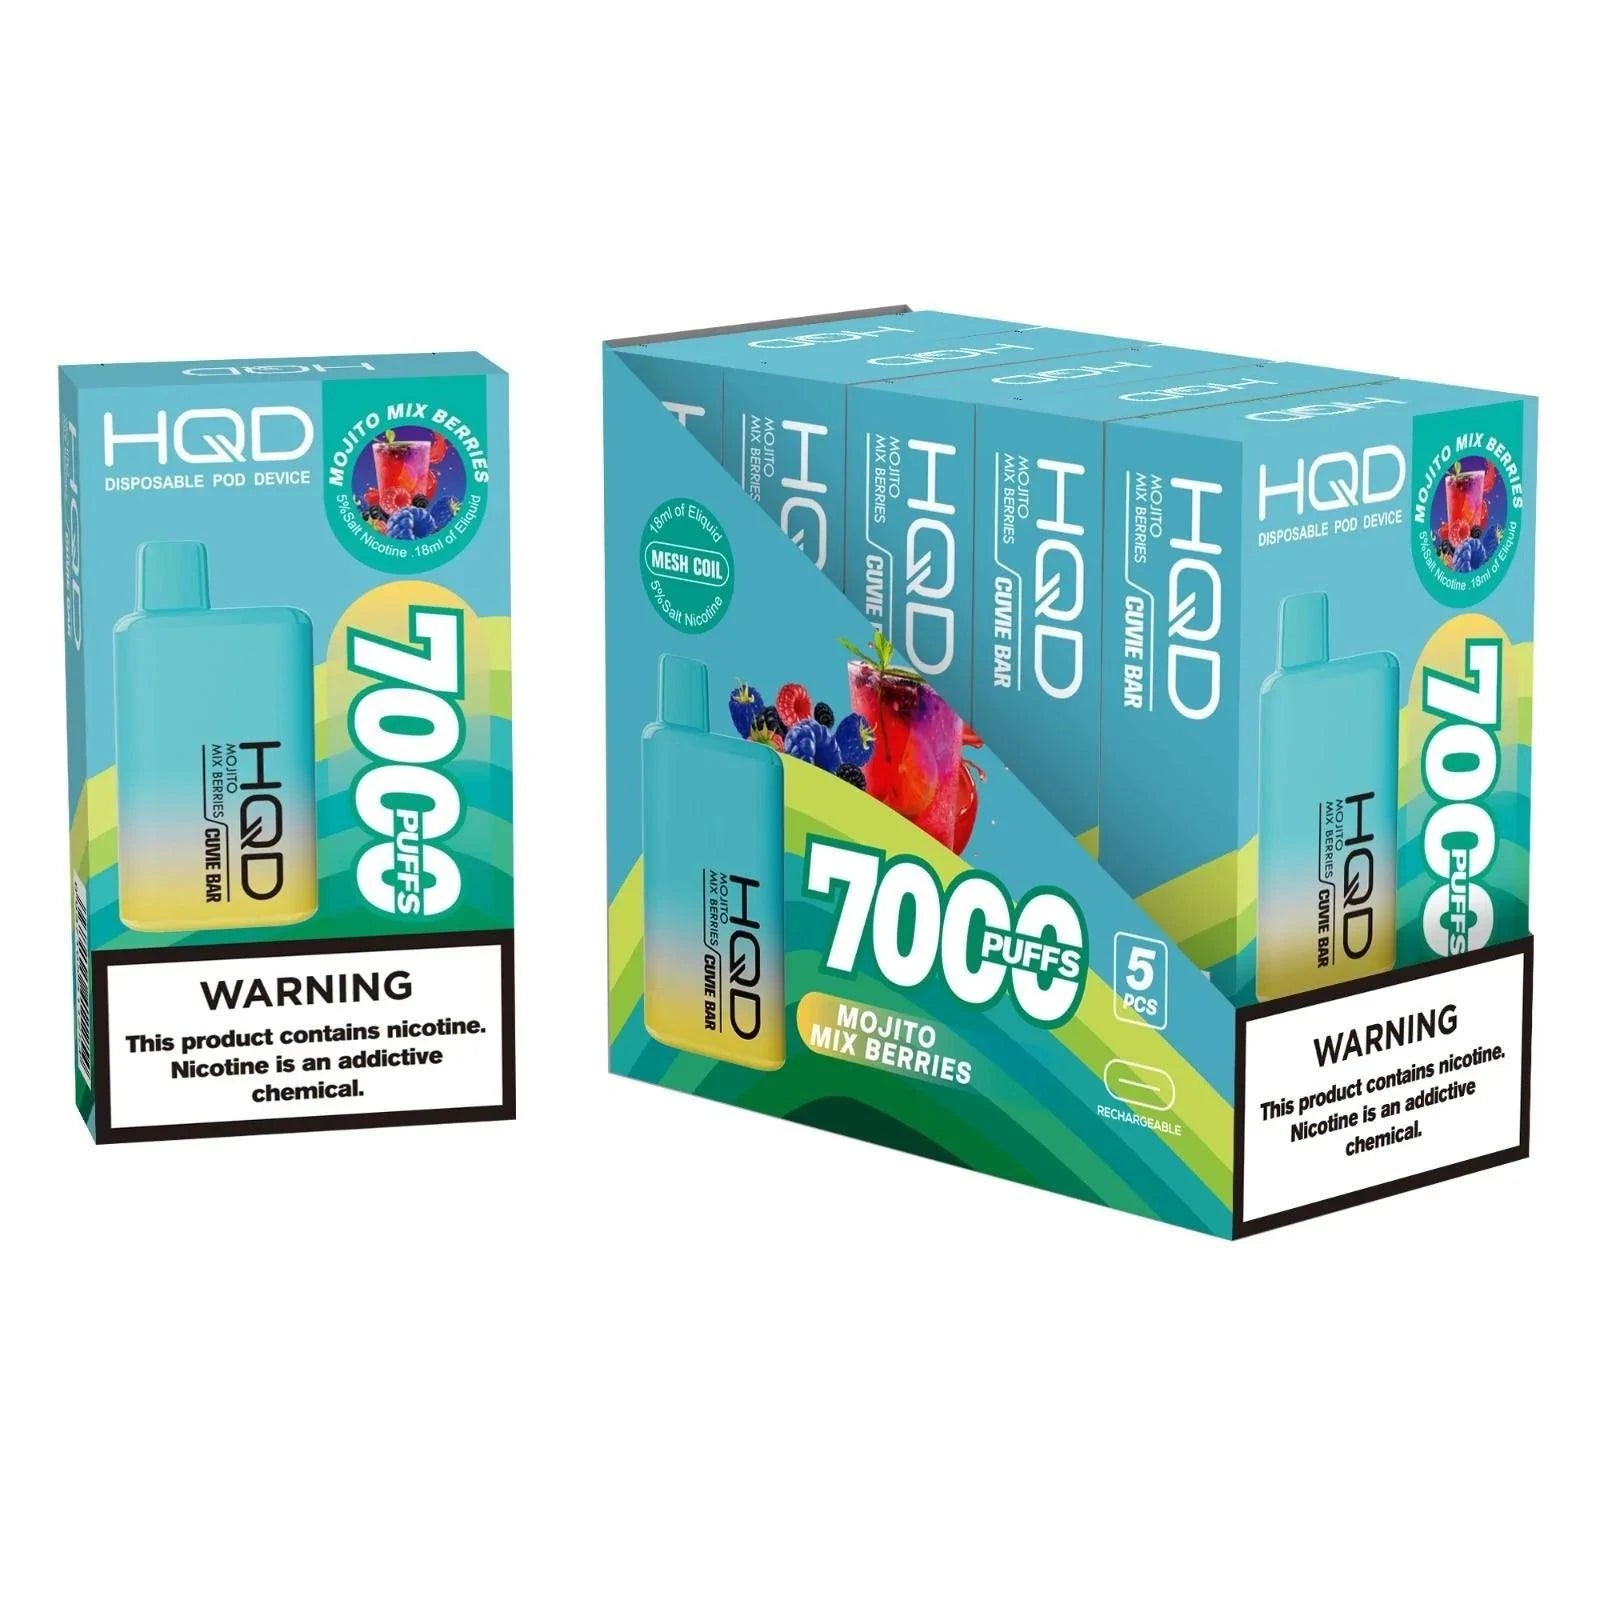 HQD Cuvie Bar 7000 Puffs Disposable Vape - 6 Pack